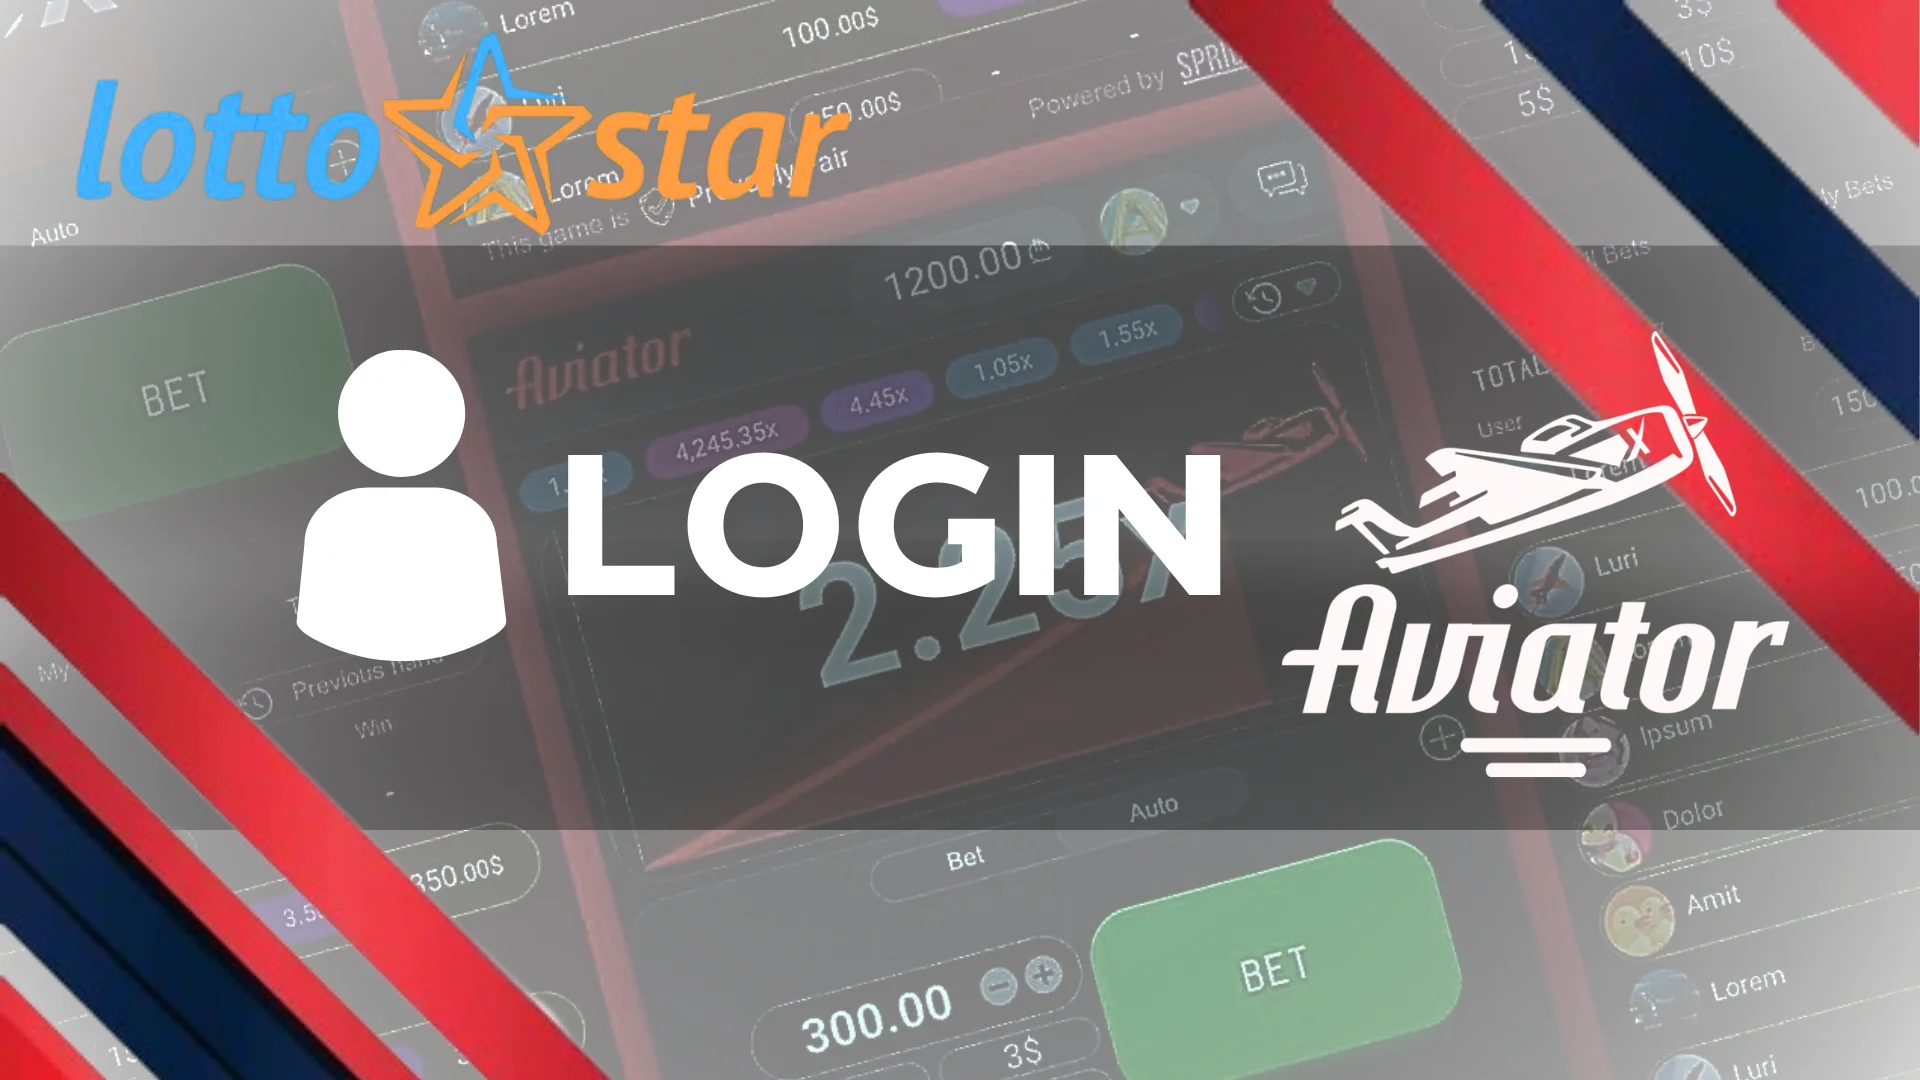 Fundo de jogo de Aviator com logotipo do cassino Lottostar e login de texto